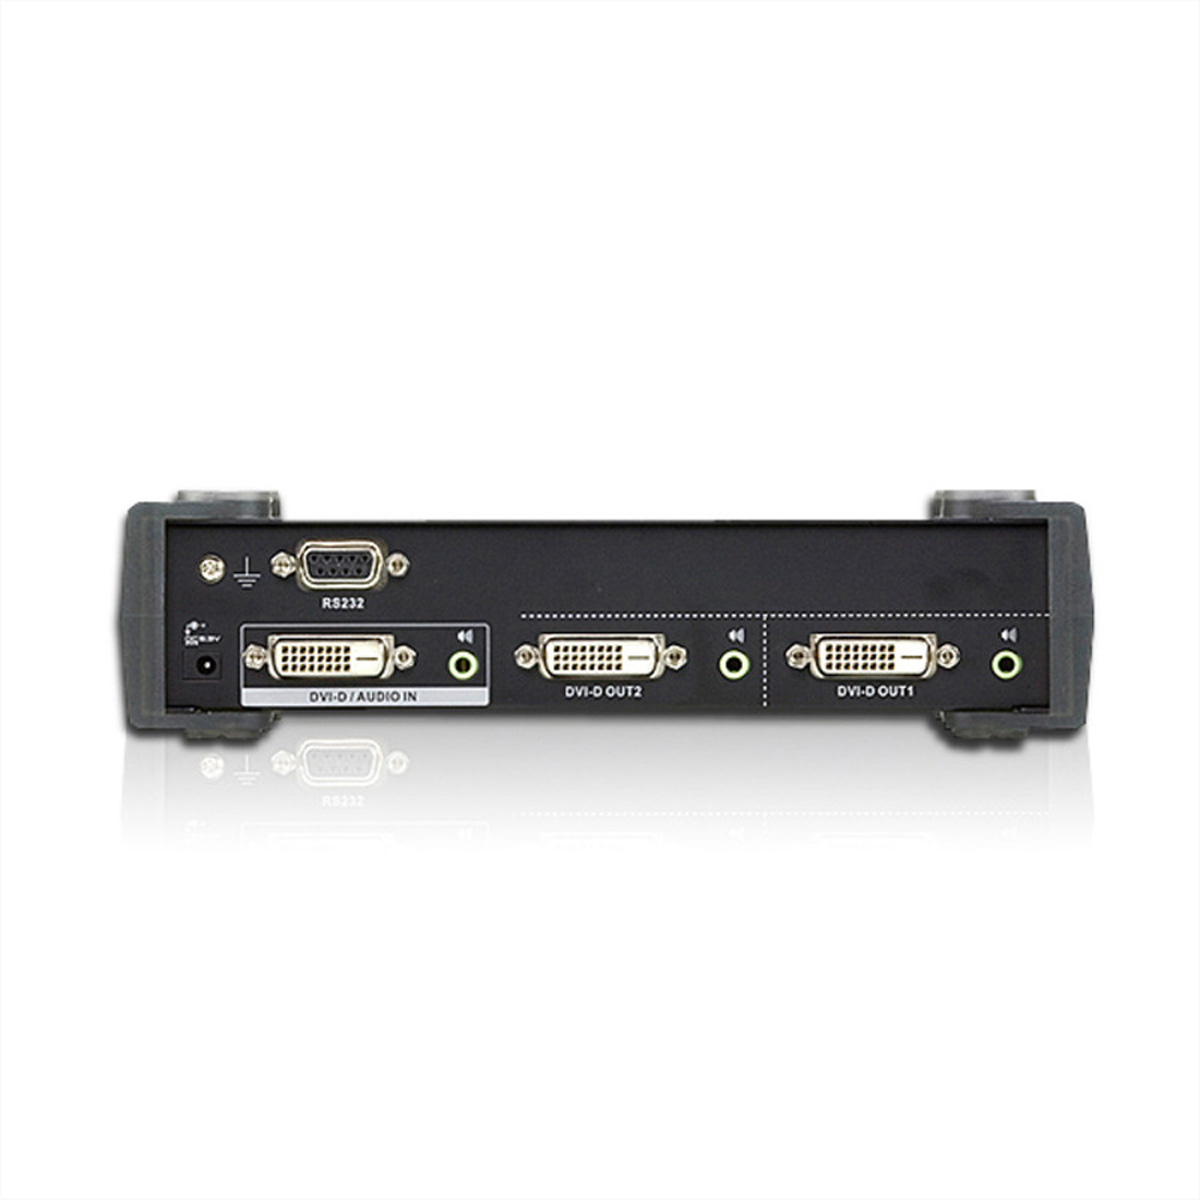 DVI Dual ATEN 2fach Link Video-/Audiosplitter, DVI-Video-Splitter VS172